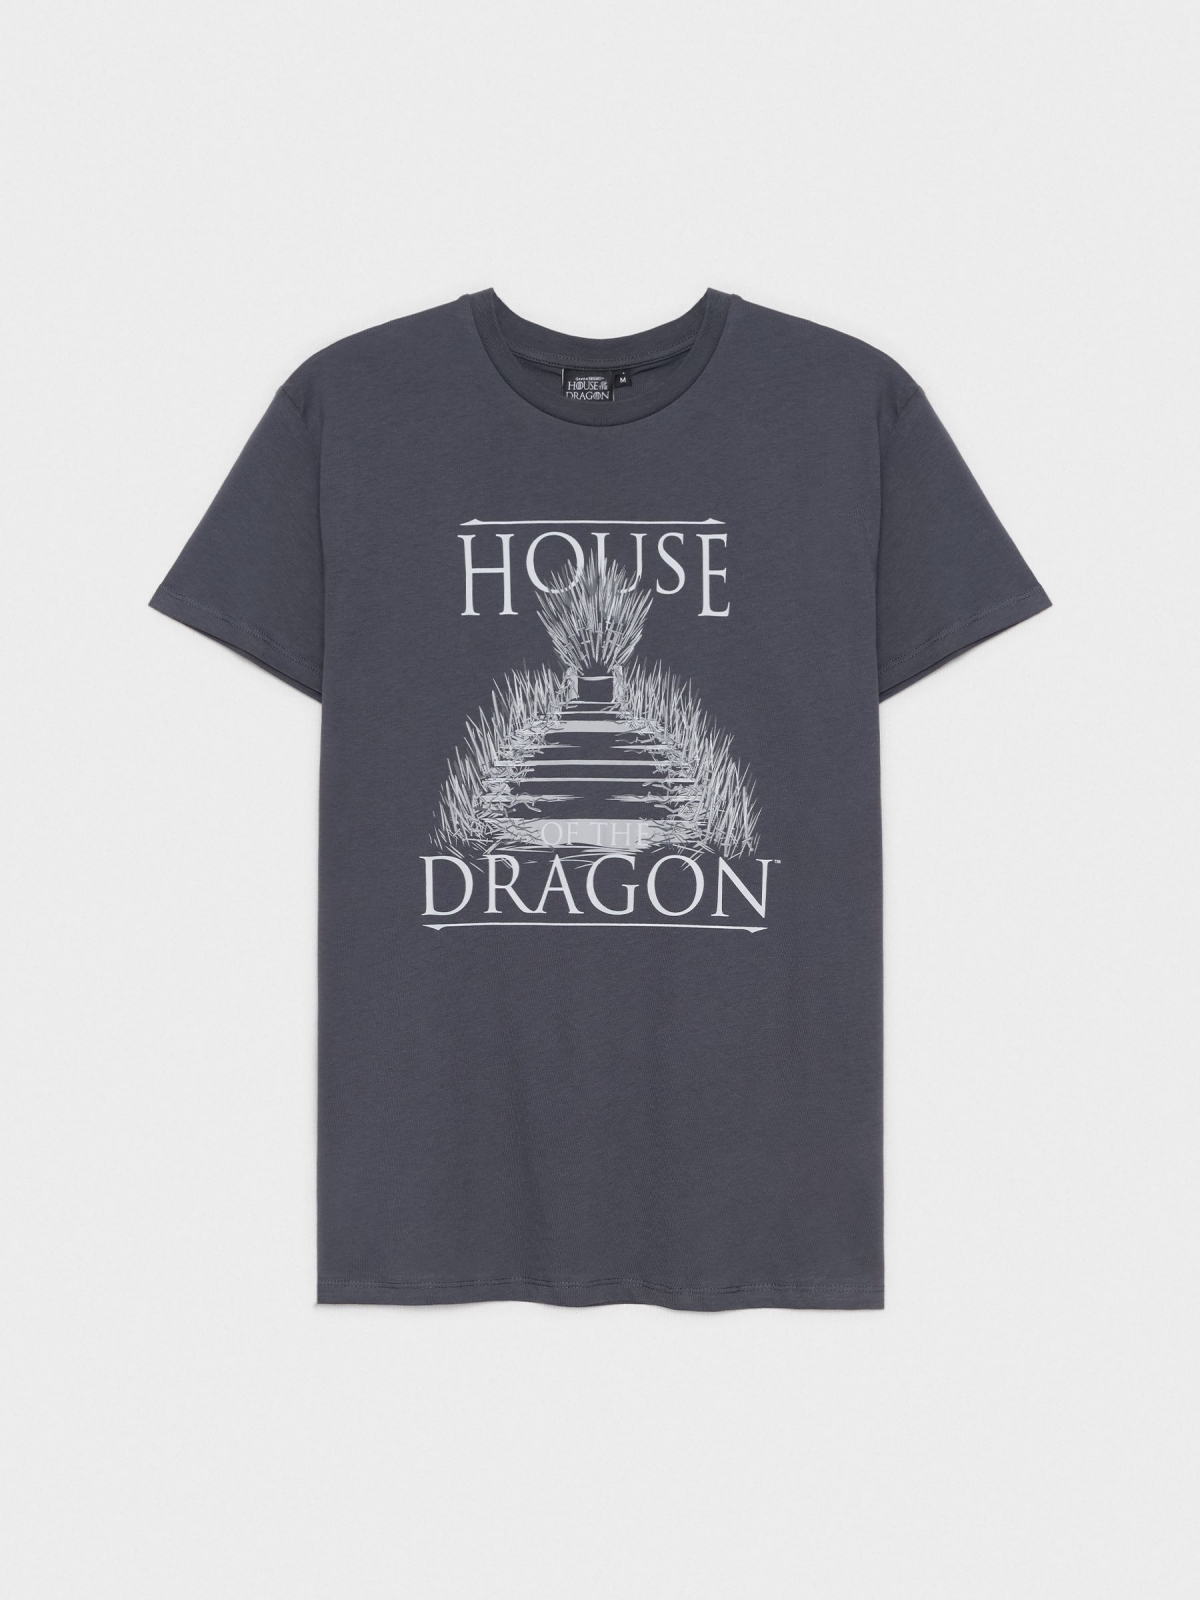  Camiseta House of the Dragon gris oscuro